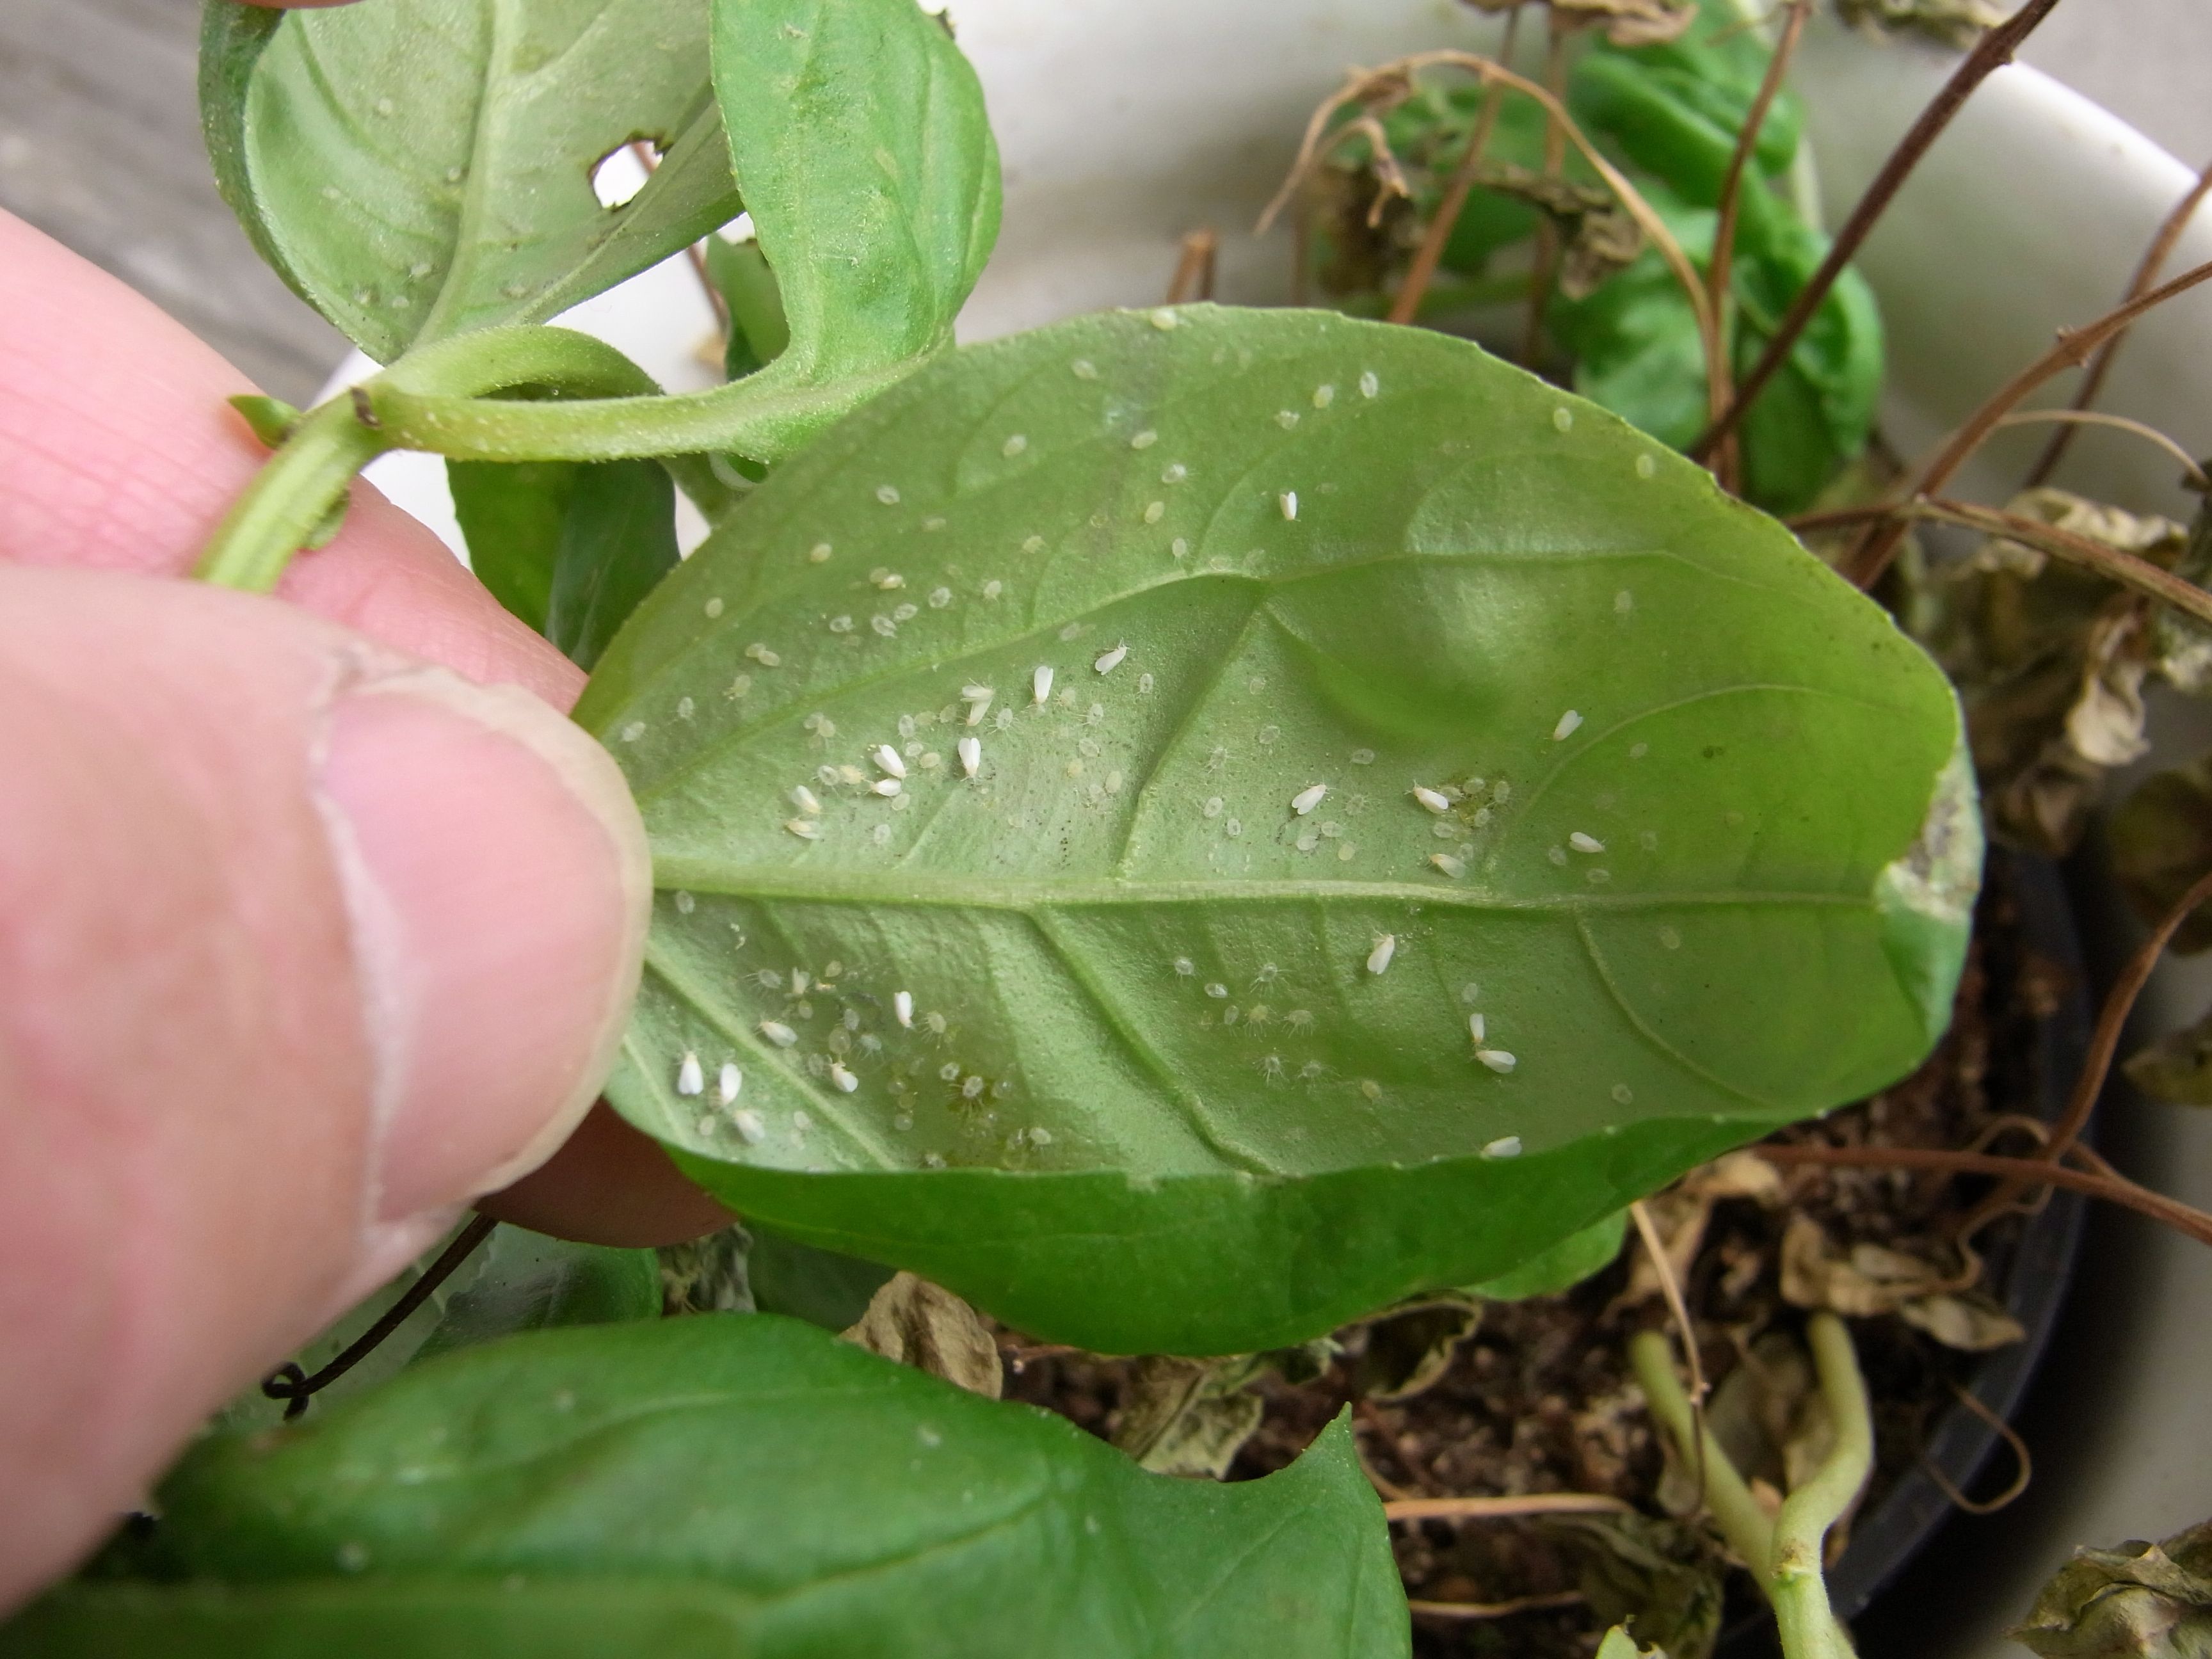 Cochenilles sur les plantes d'intérieur : la solution miracle pour